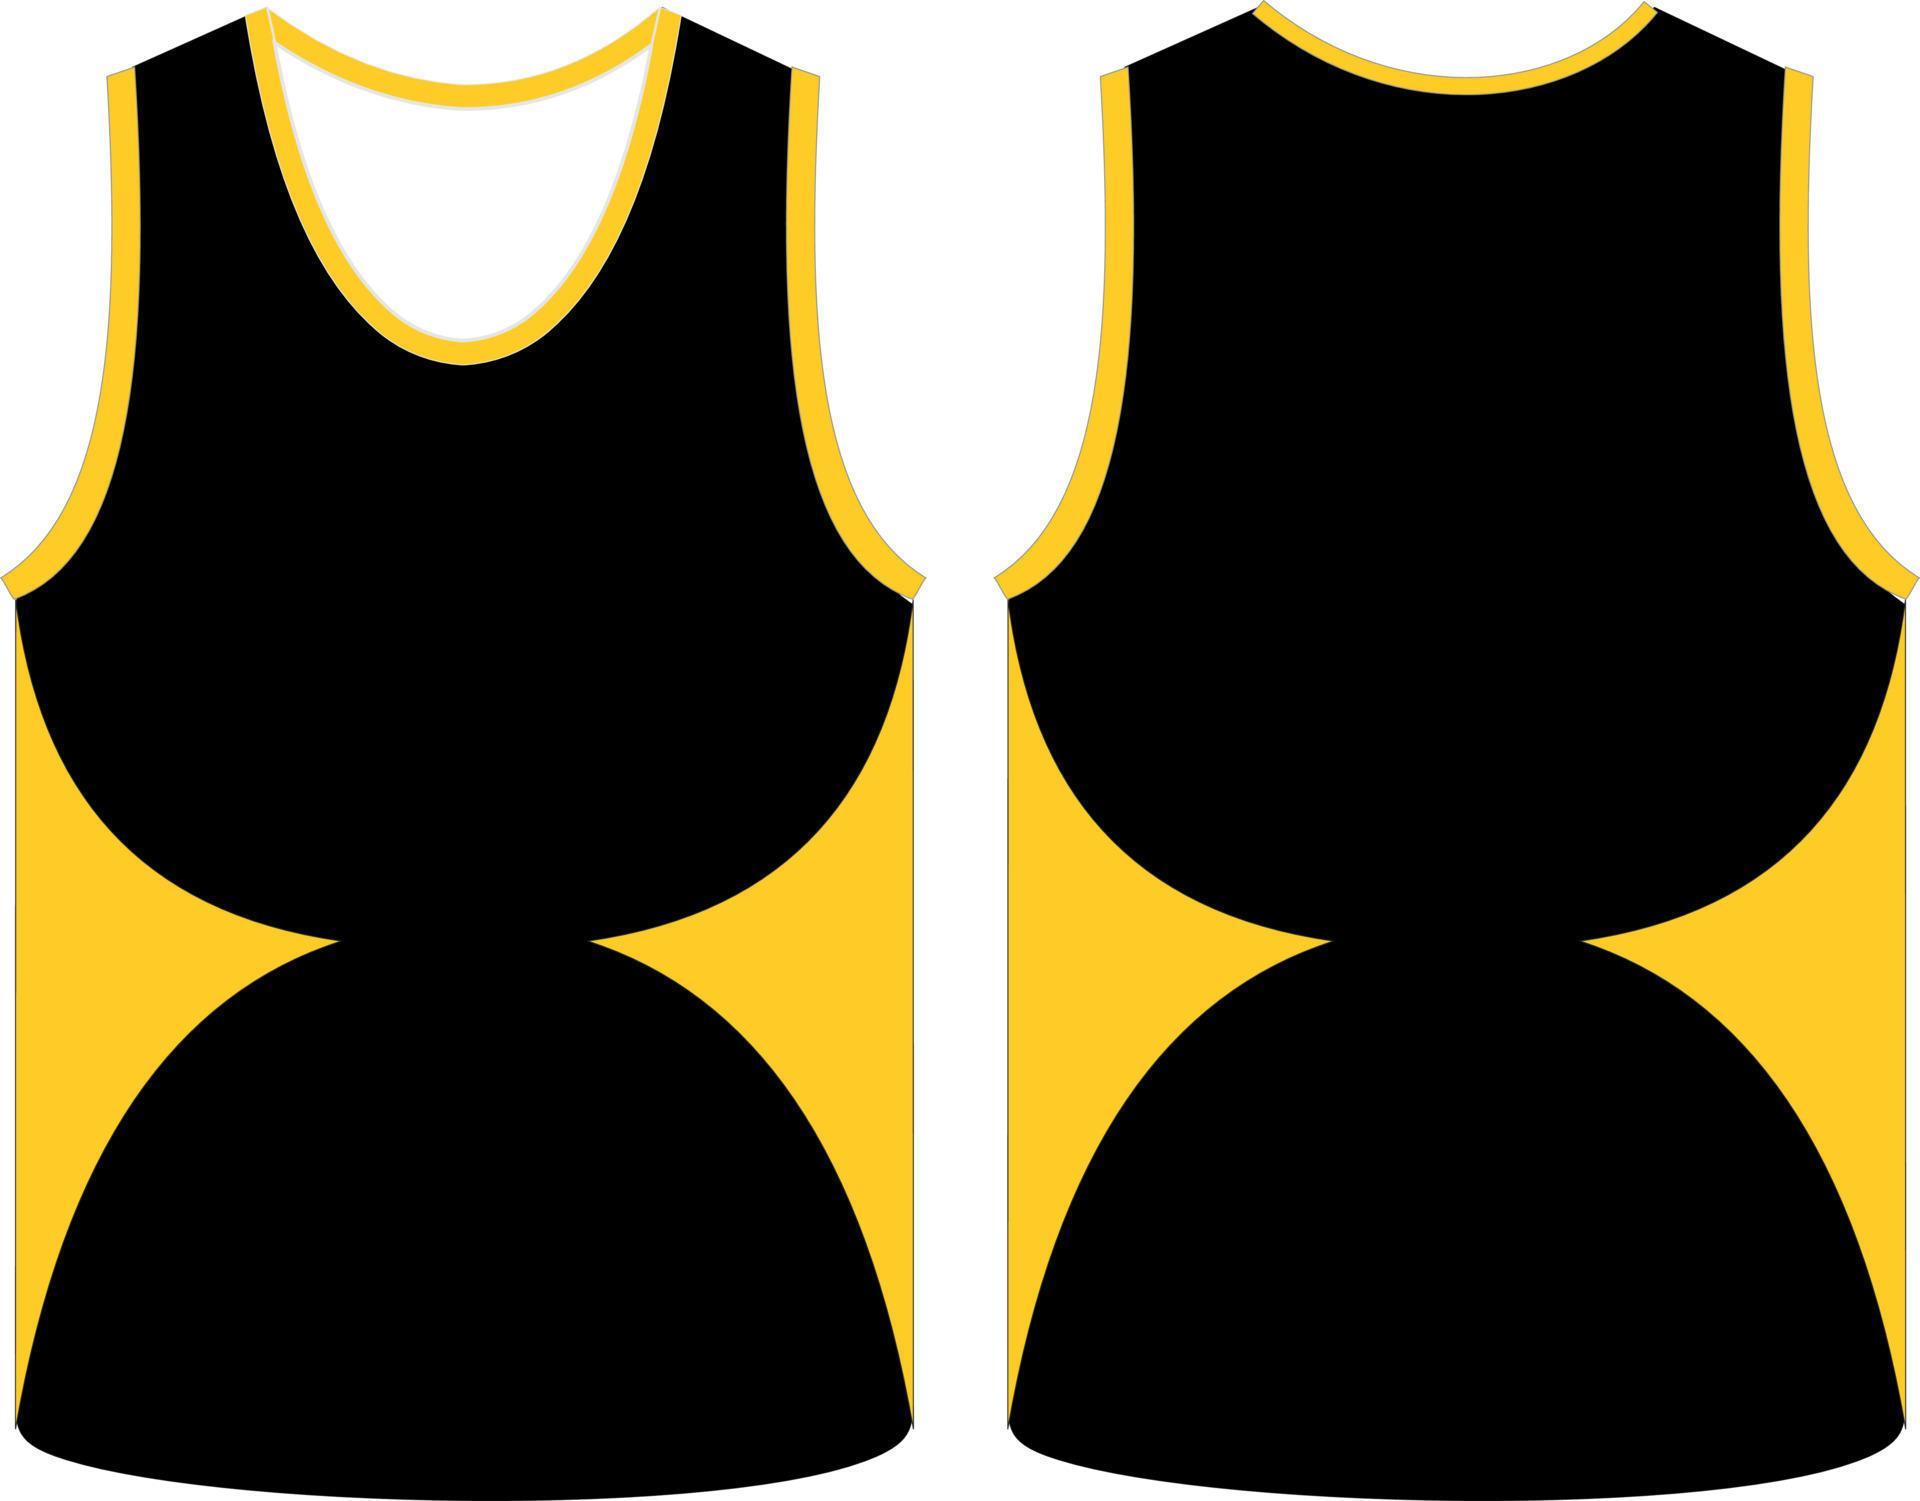 Sleeveless Tank Top Basketball jersey vest design t-shirt template ...